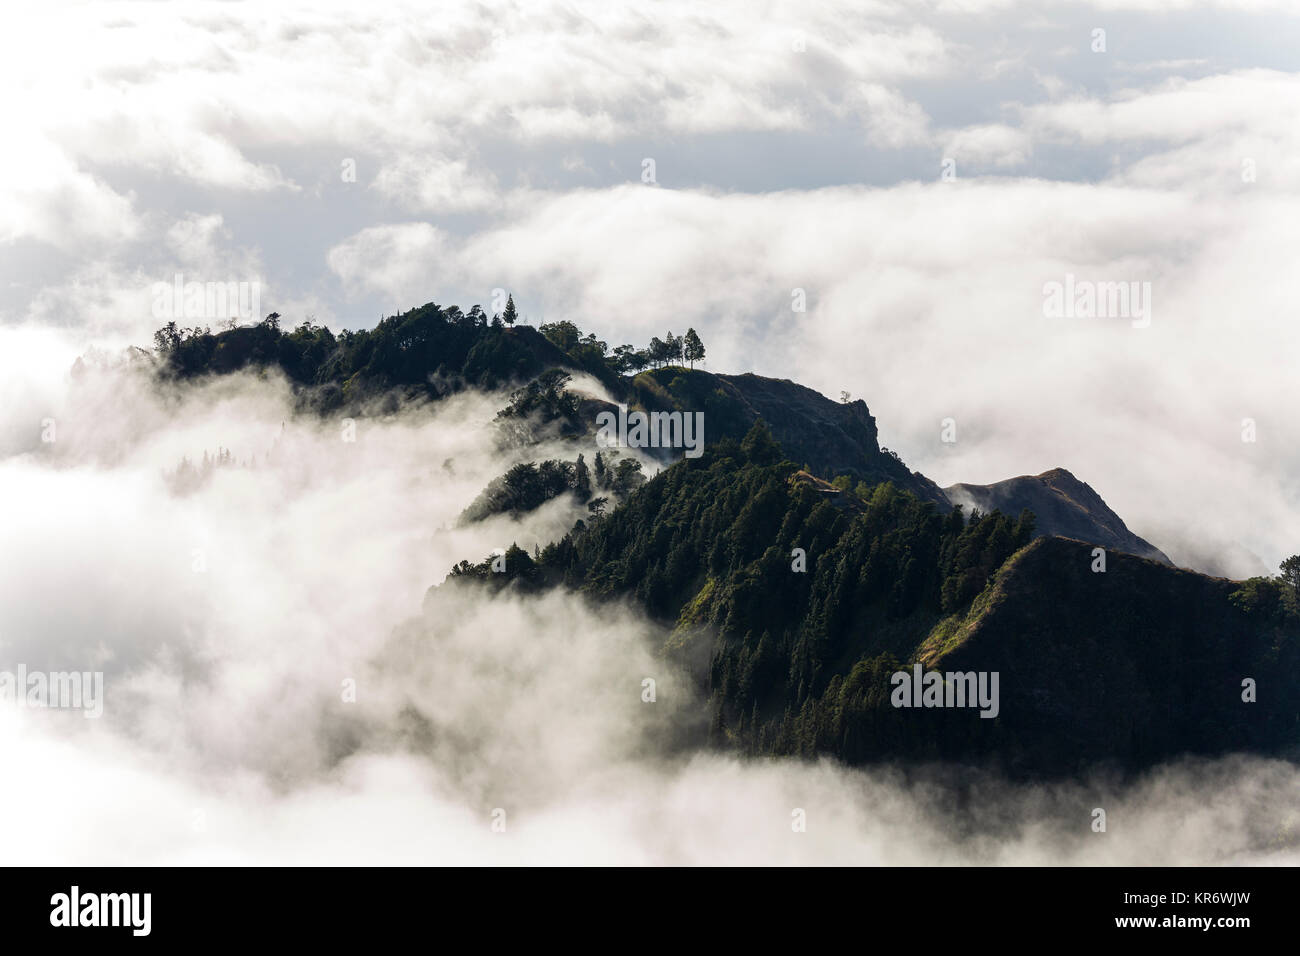 Vista aerea di lussureggianti montagne su un'isola, circondato dalle nuvole. Foto Stock